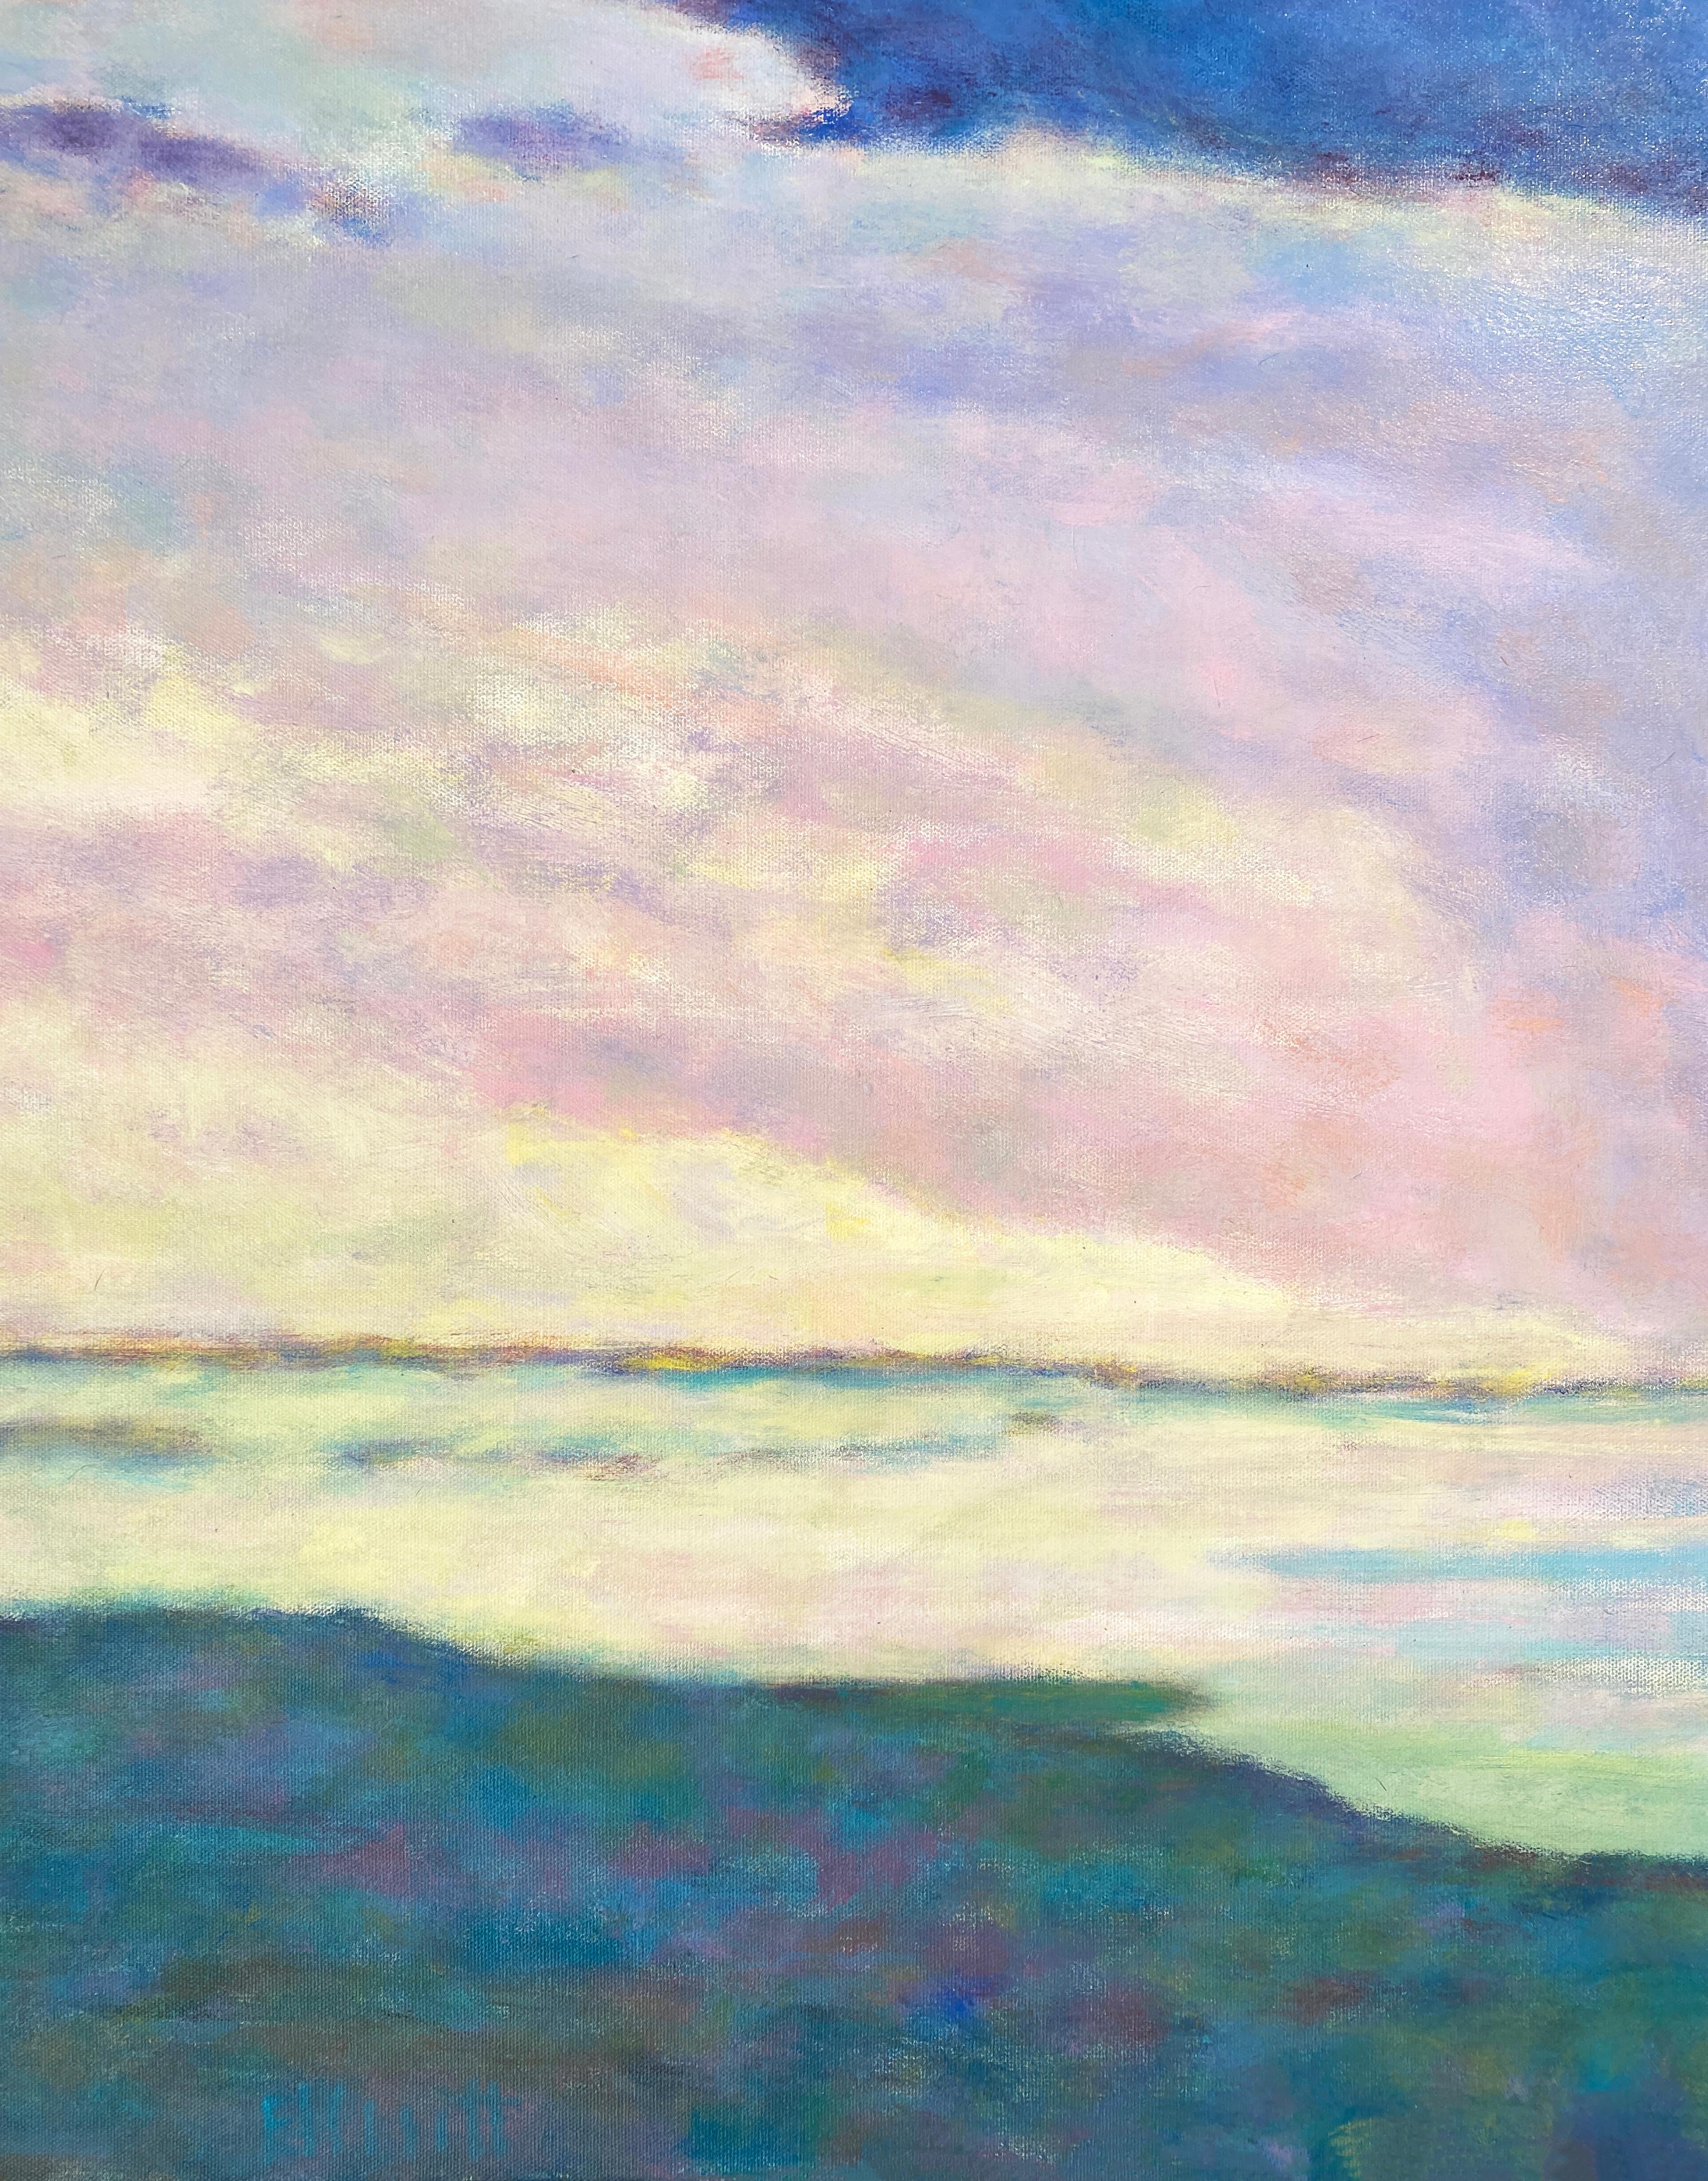 'Weather Moving Across' 2022 des amerikanischen Künstlers Ken Elliott. Öl auf Leinwand, 36 x 60 cm. Dieses Gemälde mit Wolken und Himmel besteht aus Farben in Rosa, Blau, Gelb, Lila und Grün. In der Bewegung von links nach rechts wird die Sonne